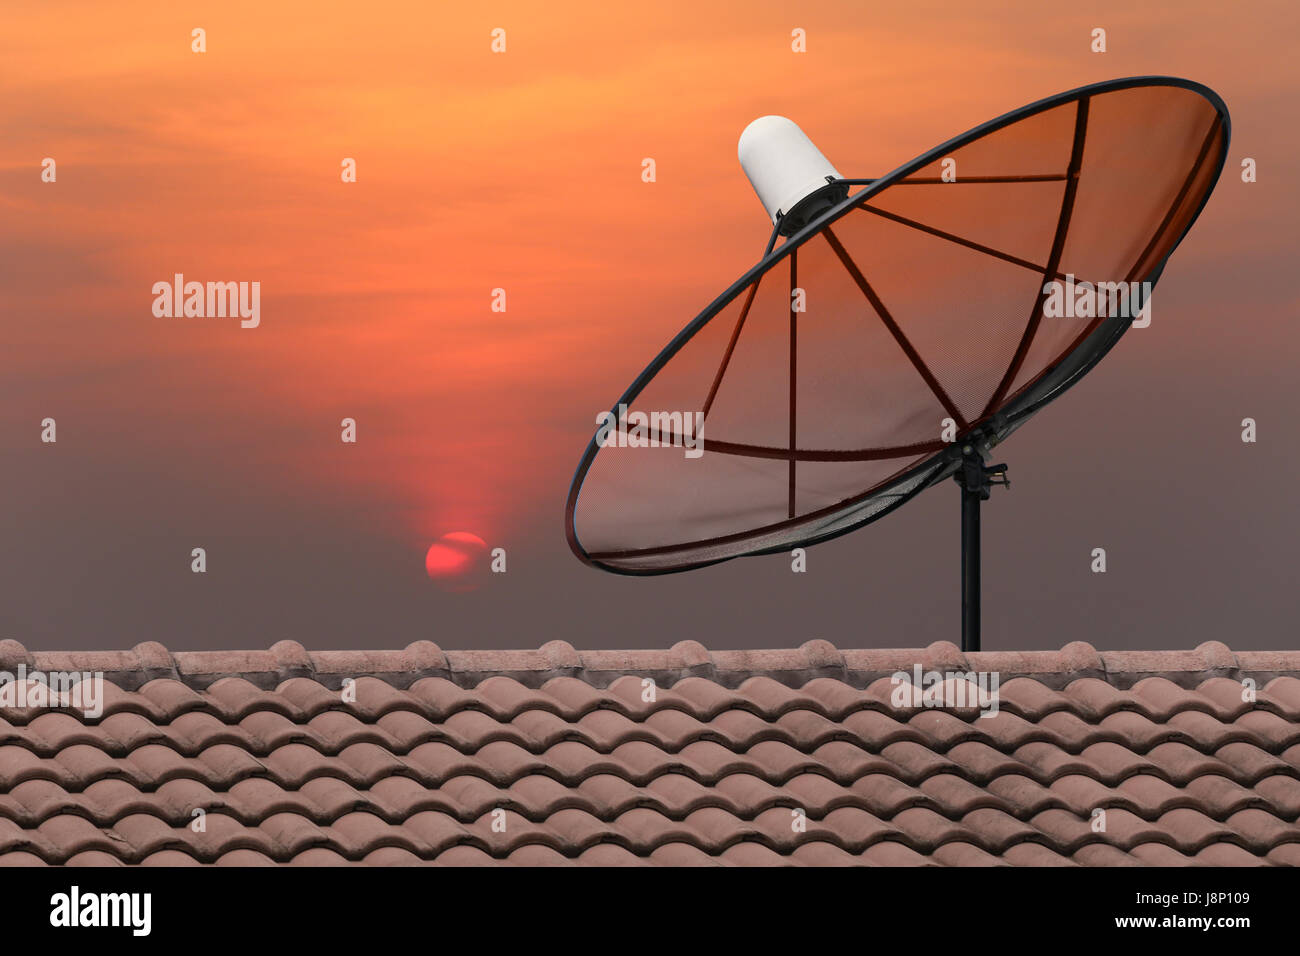 Black Satellite dish on sunset background. Stock Photo